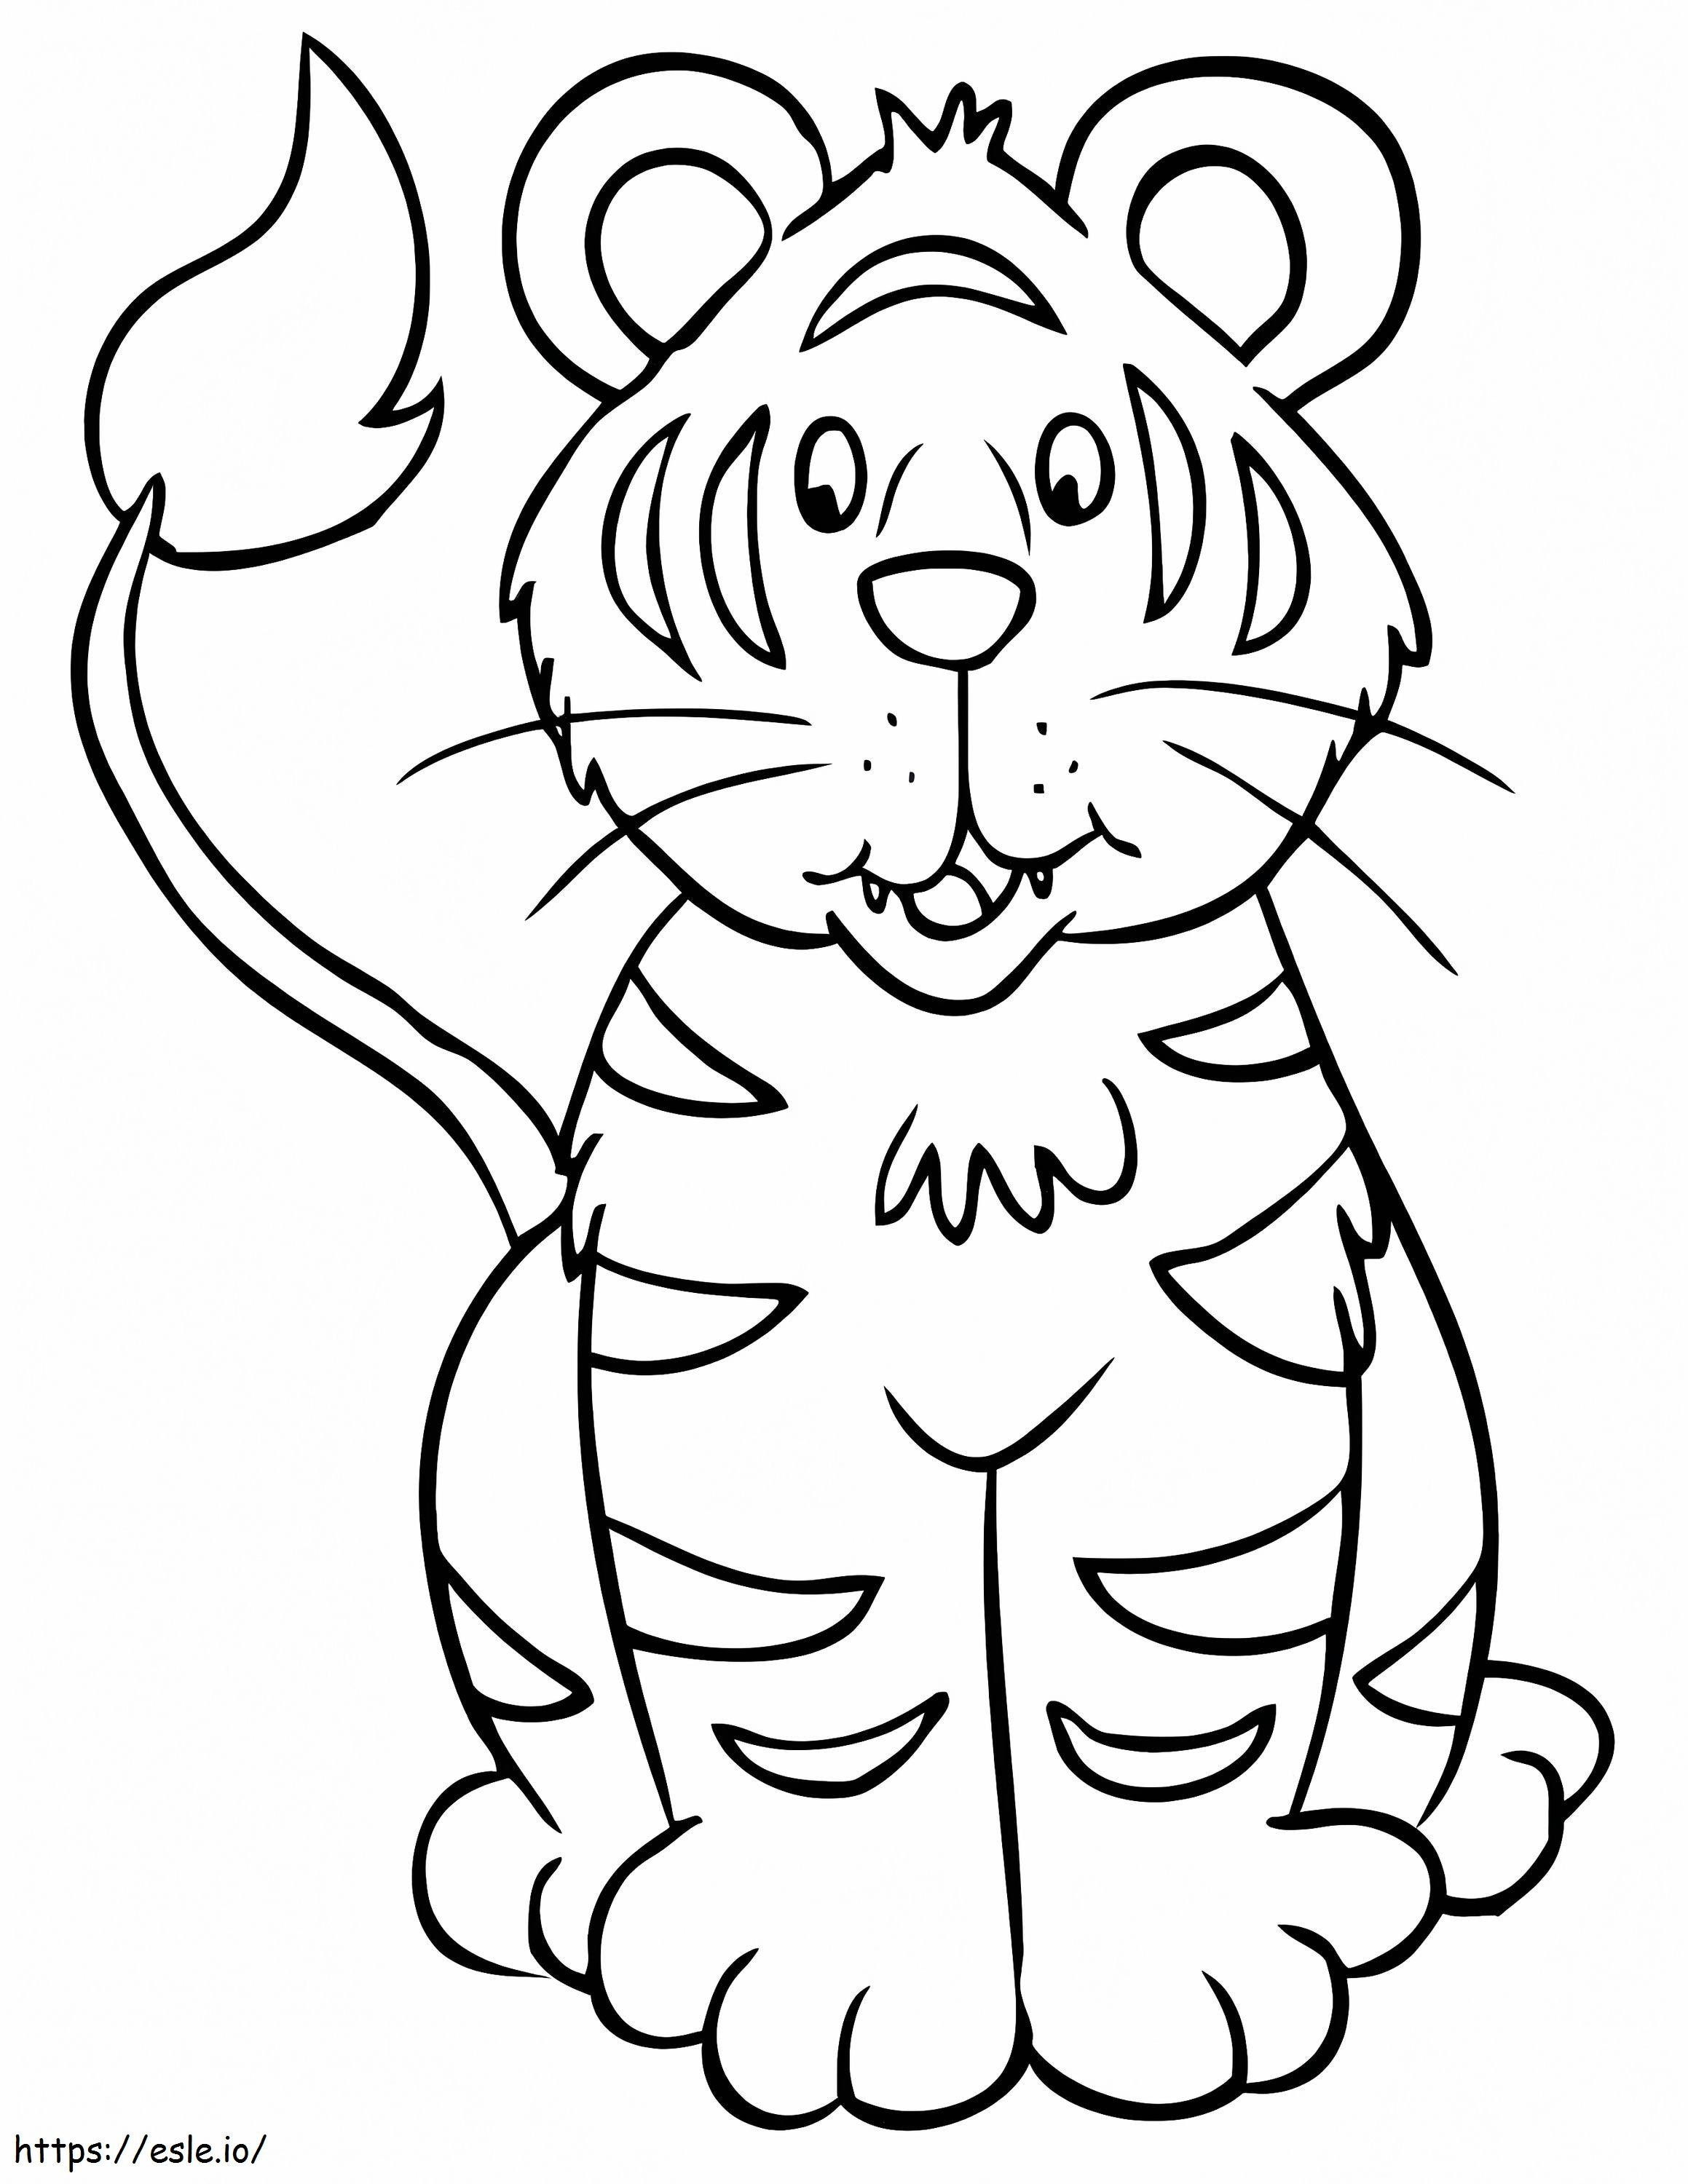 Kreskówkowy tygrys kolorowanka